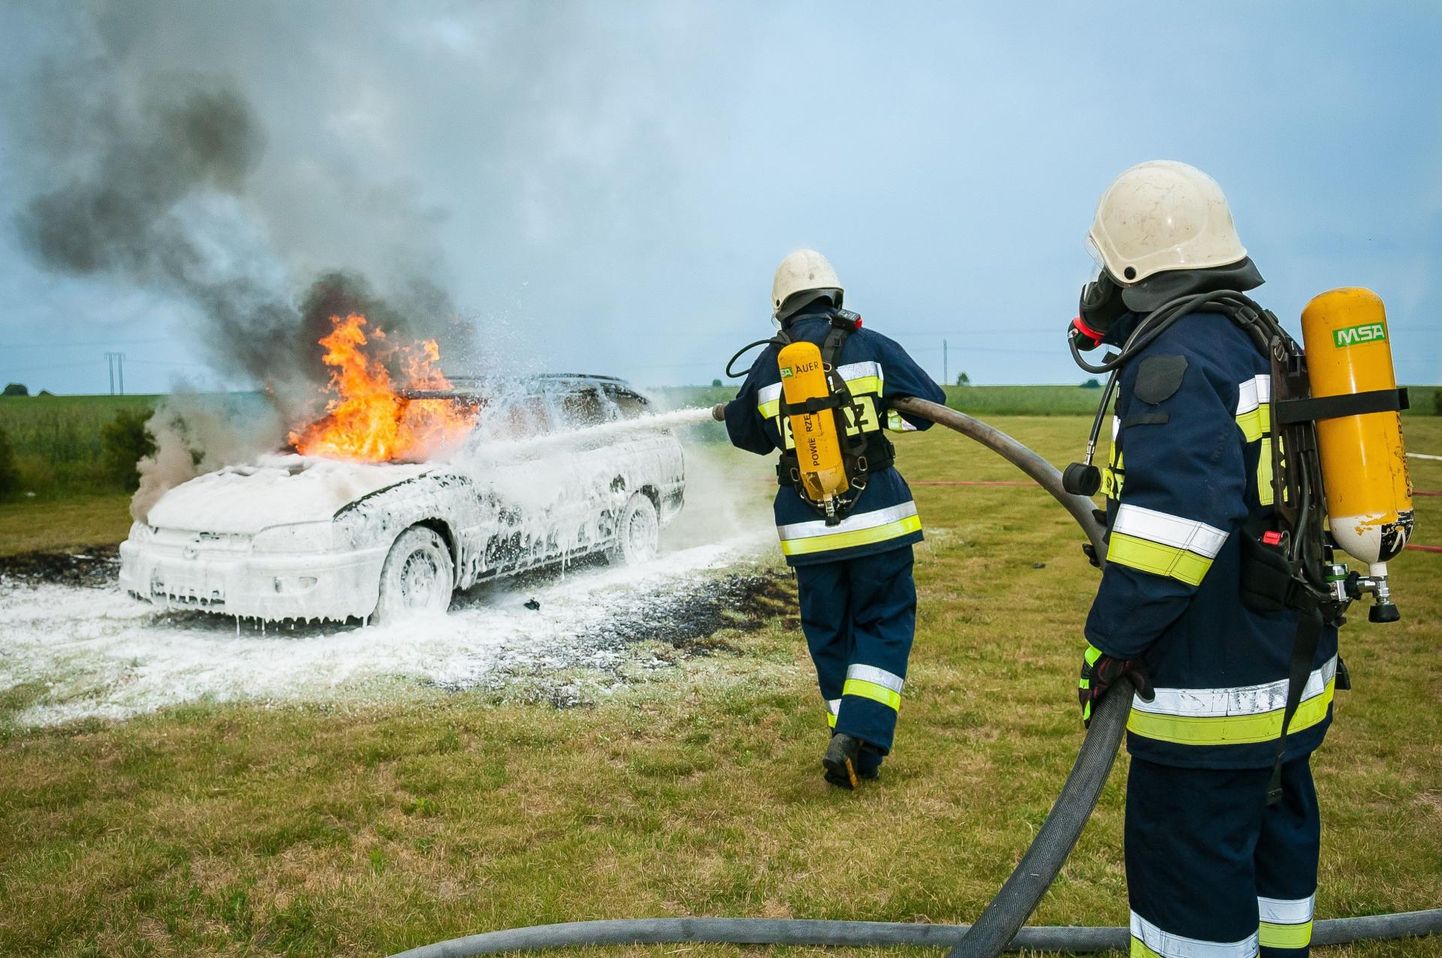 Tuletõrjujad kustutavad autopõlengut. Pilt on illustreeriv.